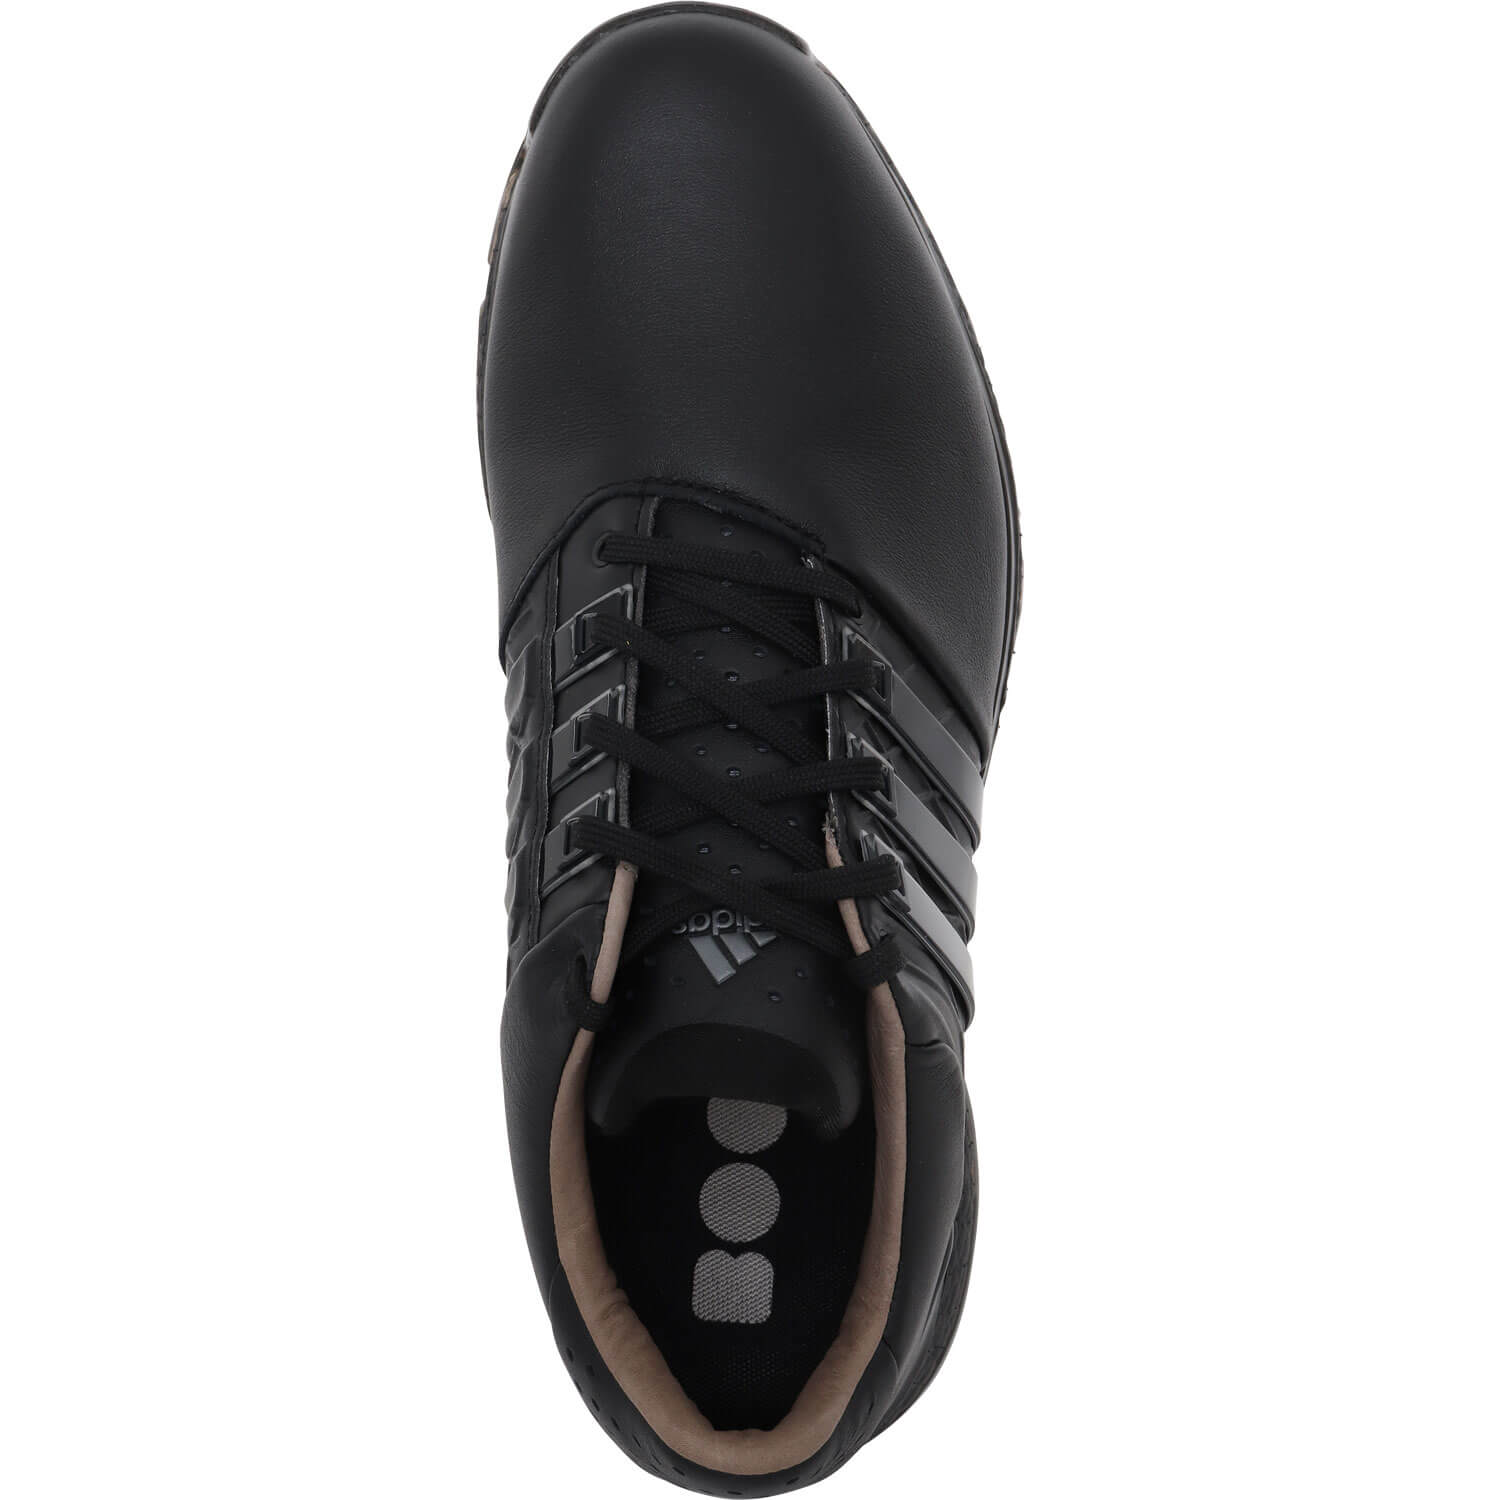 Adidas Tour360 XT-SL 2 (Wide) Black/Silver Herren